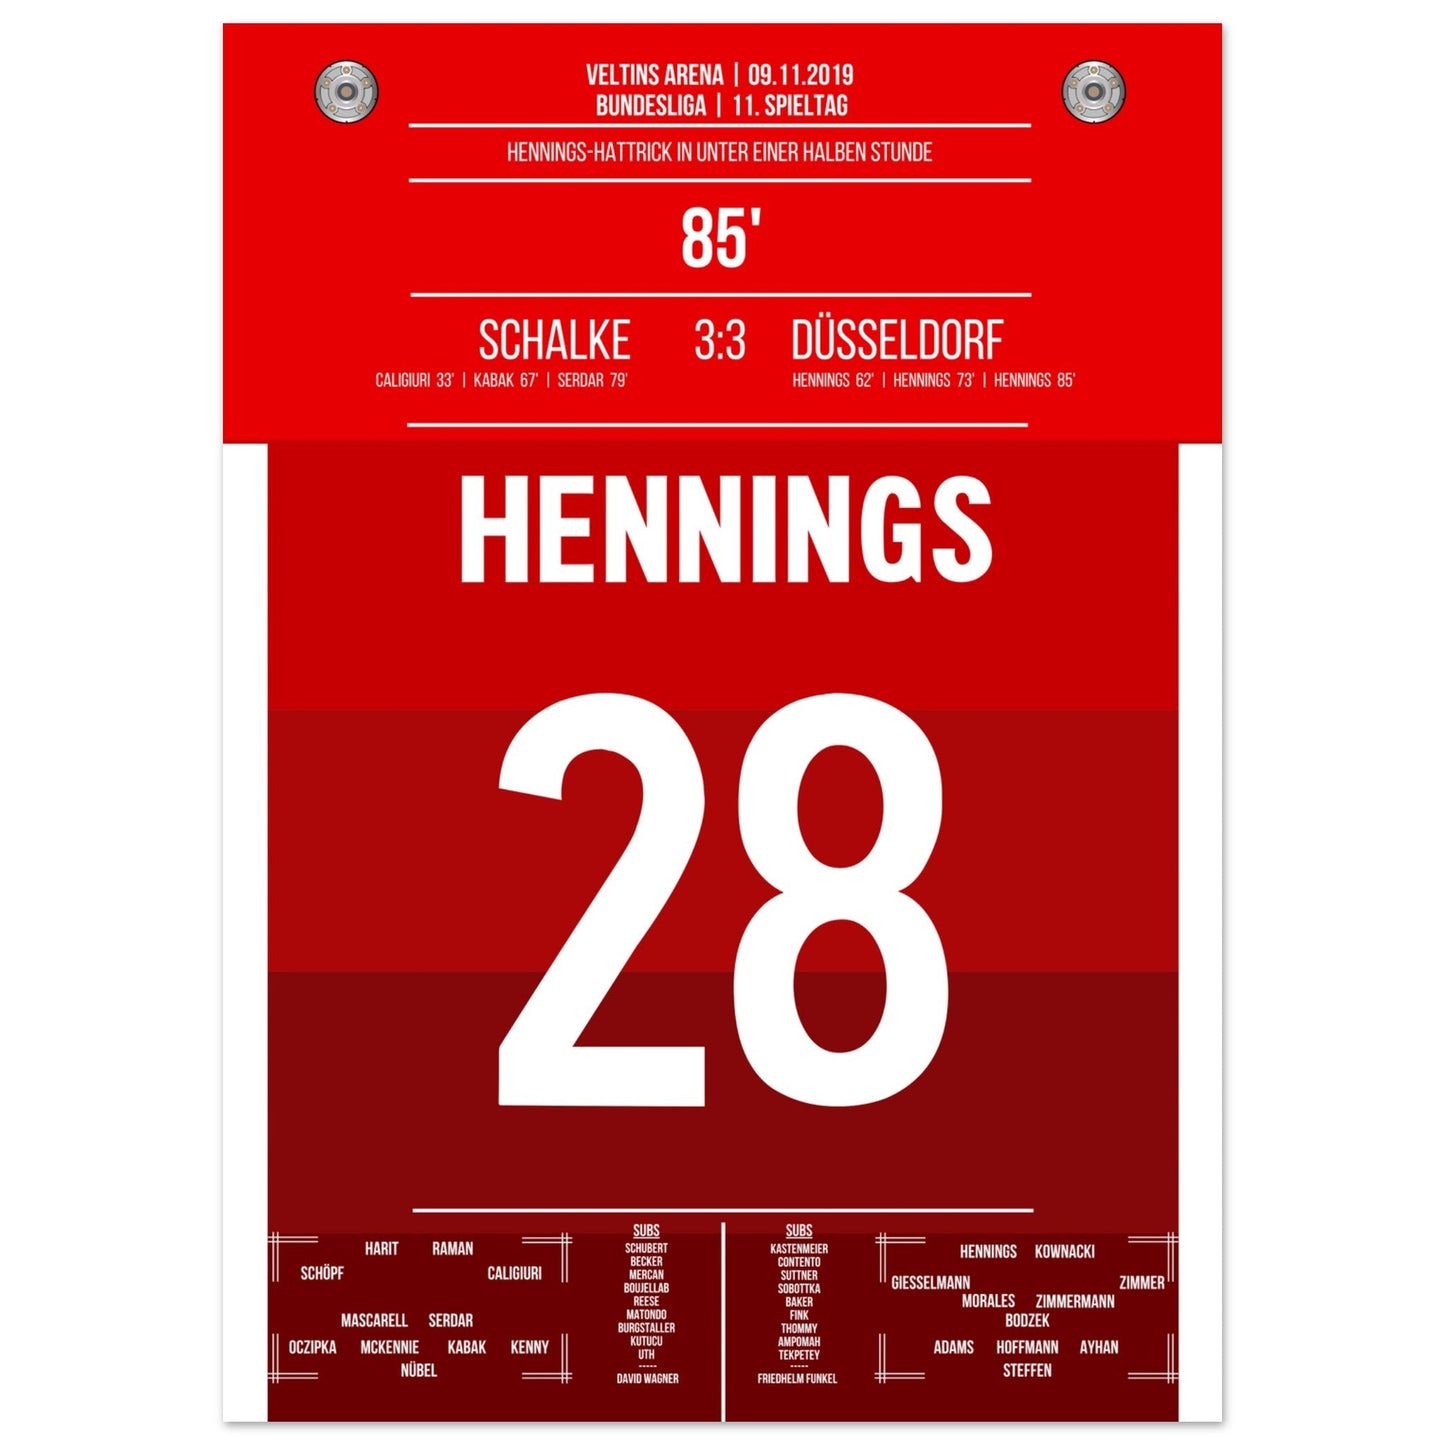 Hennings-Hattrick bei Punktgewinn auf Schalke in 2019